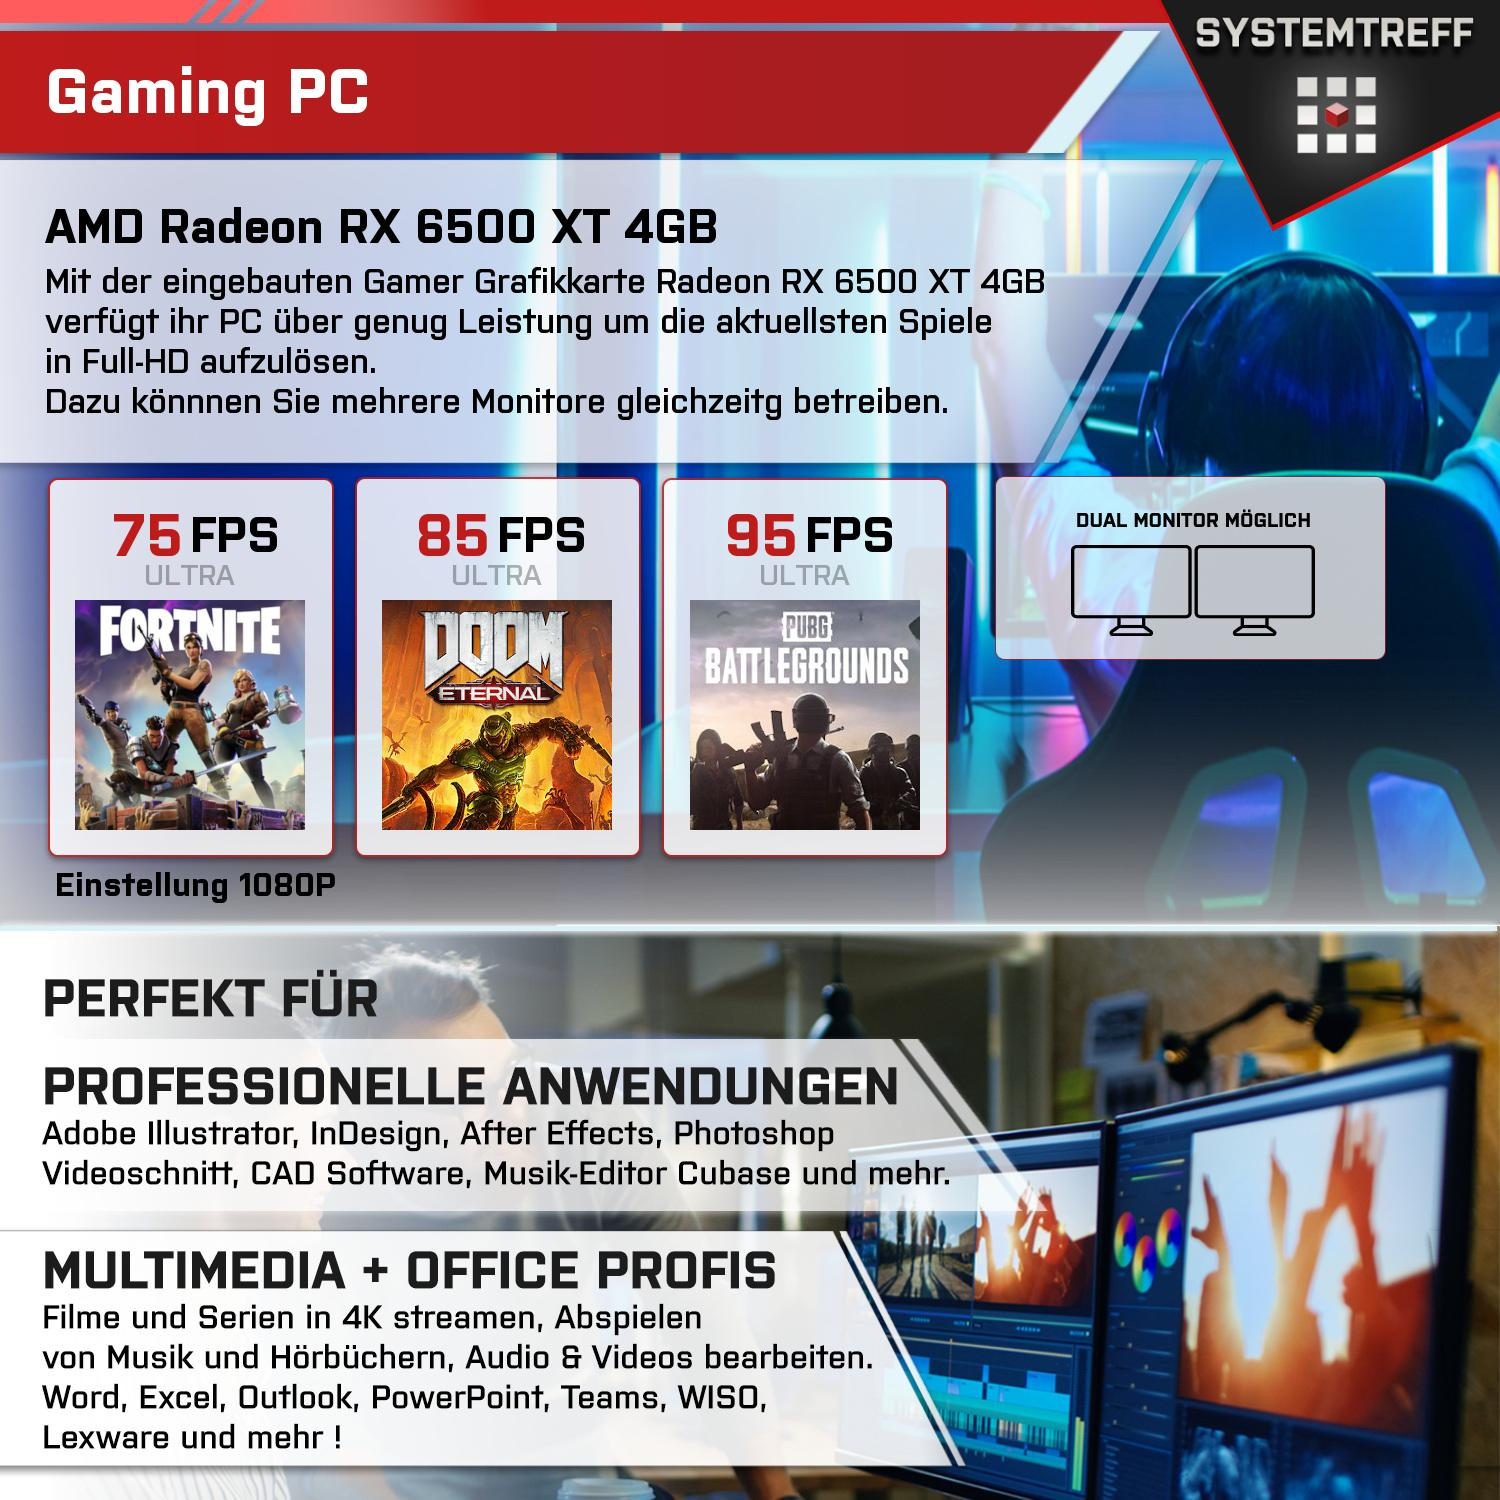 SYSTEMTREFF Gaming Komplett AMD GB mSSD, 6500 Radeon 16 GB GB RX 5600, mit 5600 Prozessor, AMD XT 4GB, RAM, 1000 5 PC Komplett 4 Ryzen